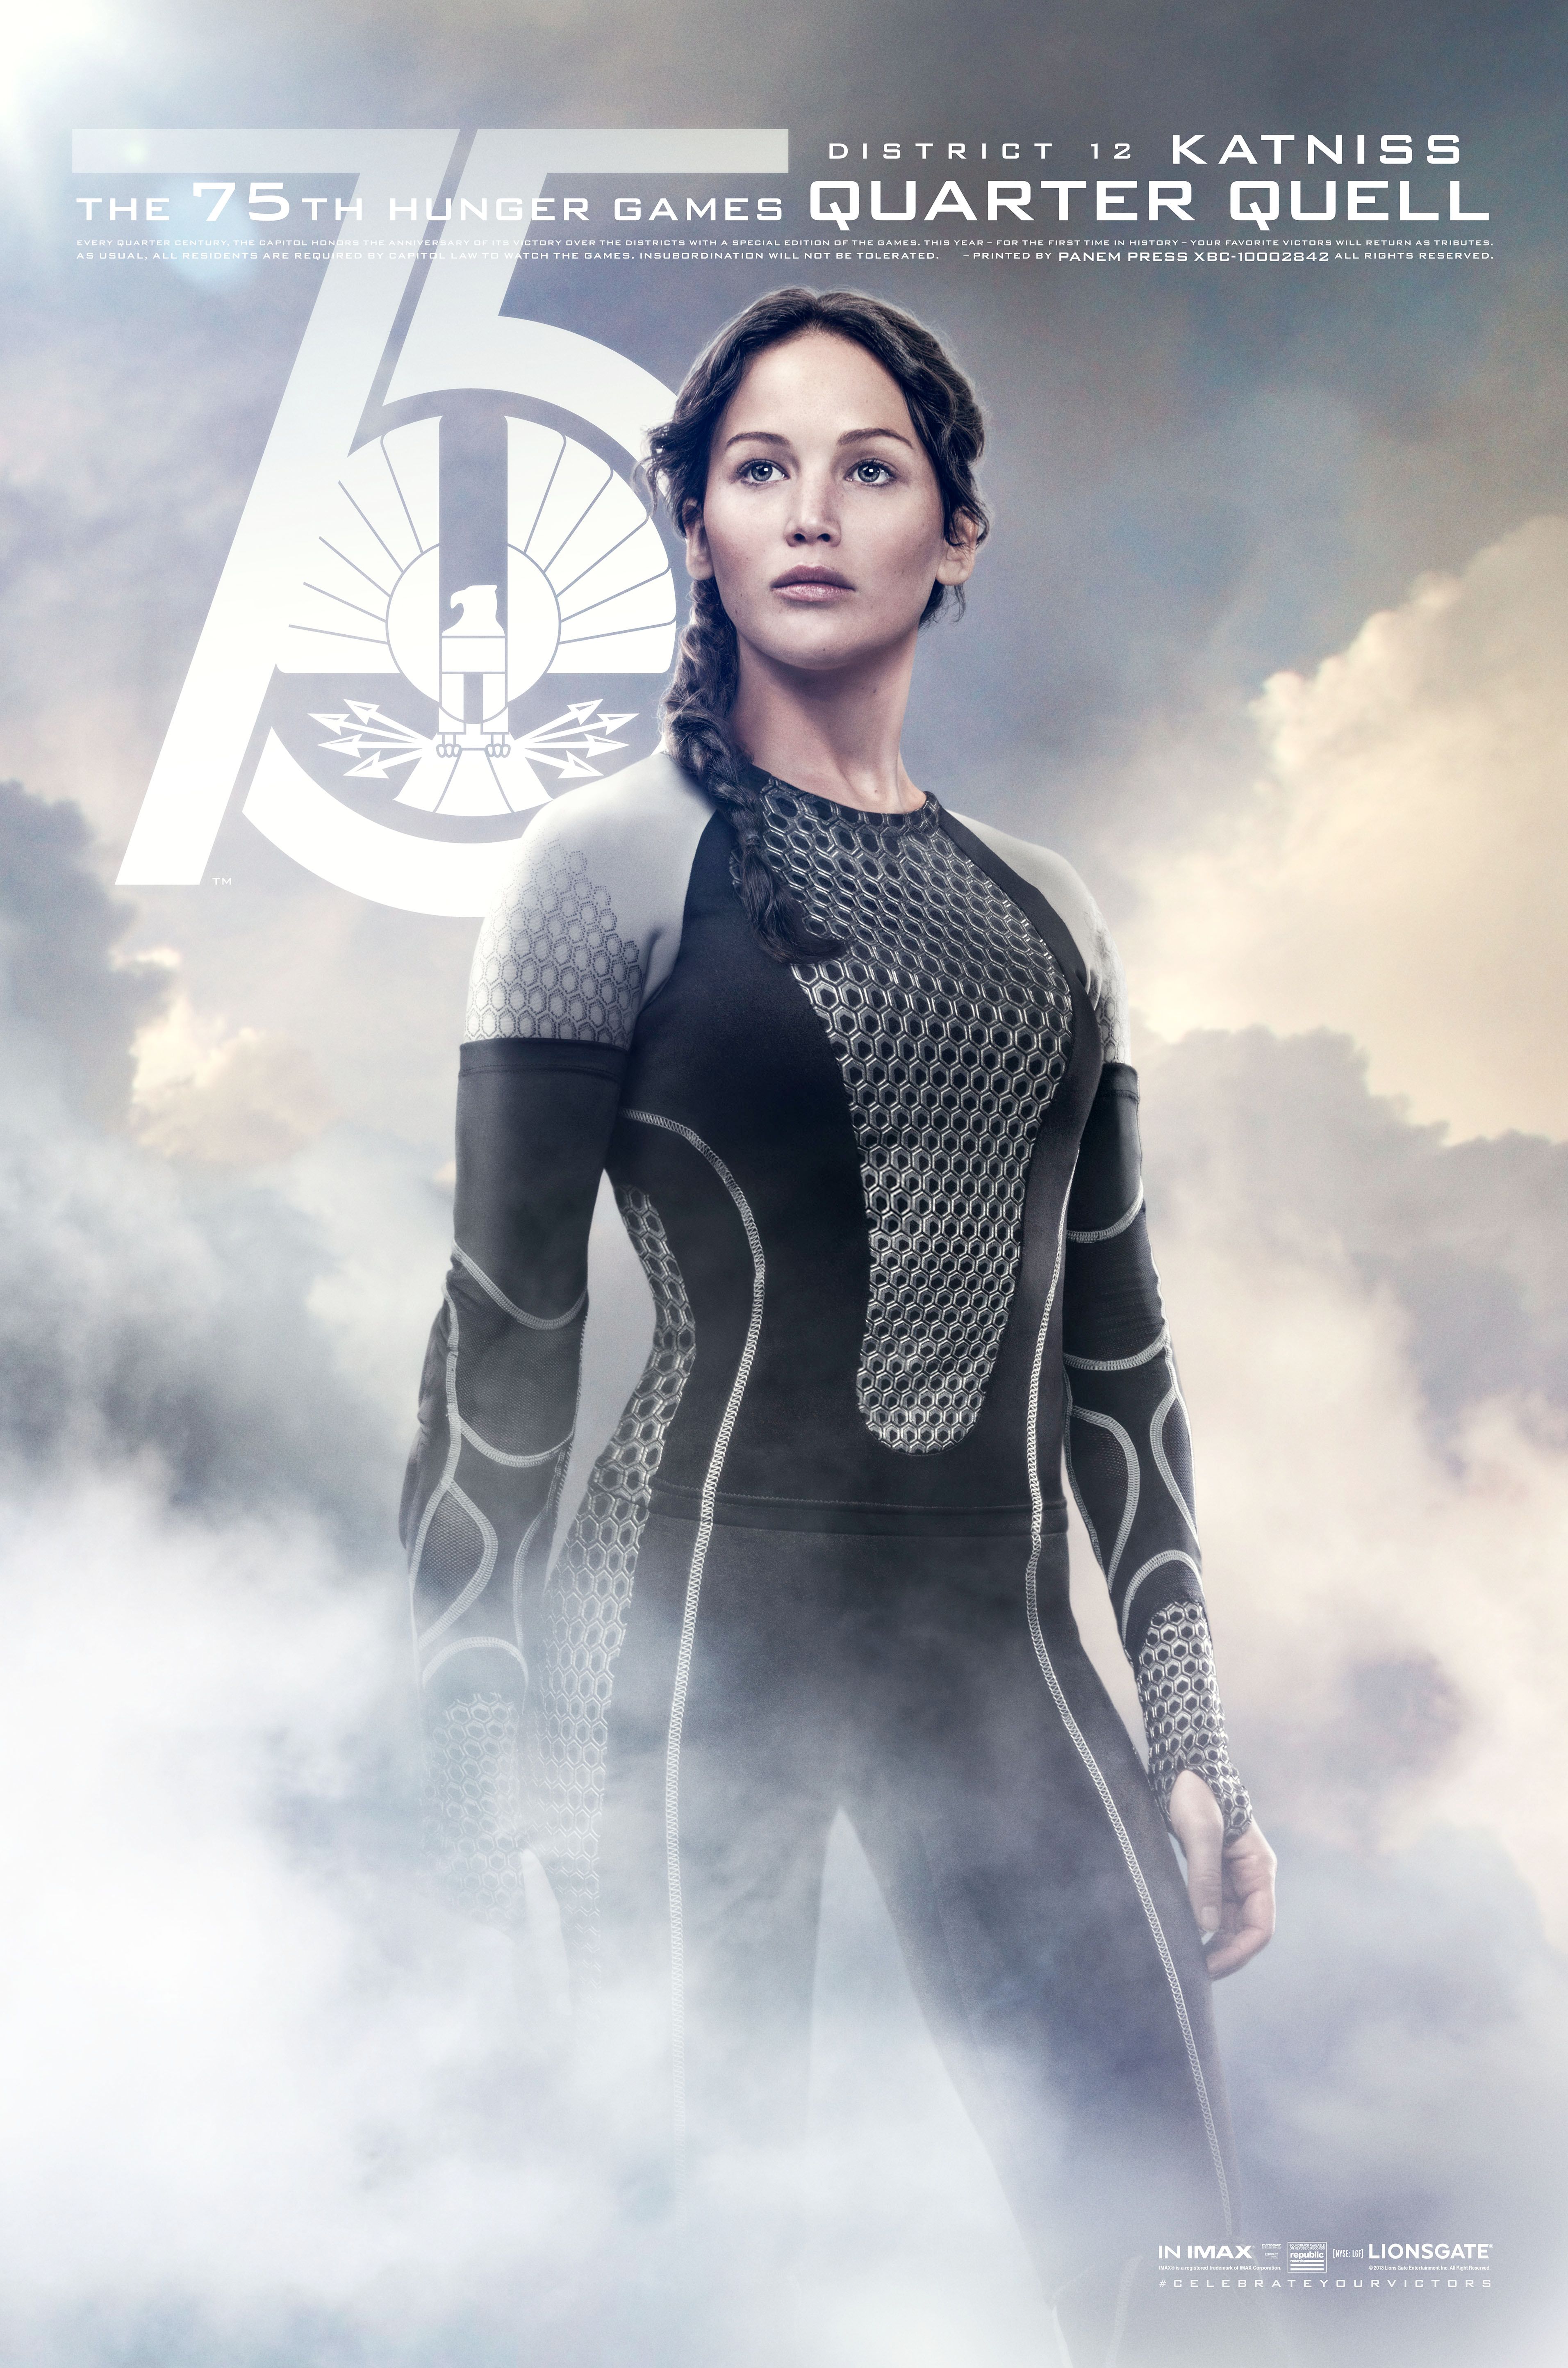 The Hunger Games Catching Fire Katniss Everdeen Poster